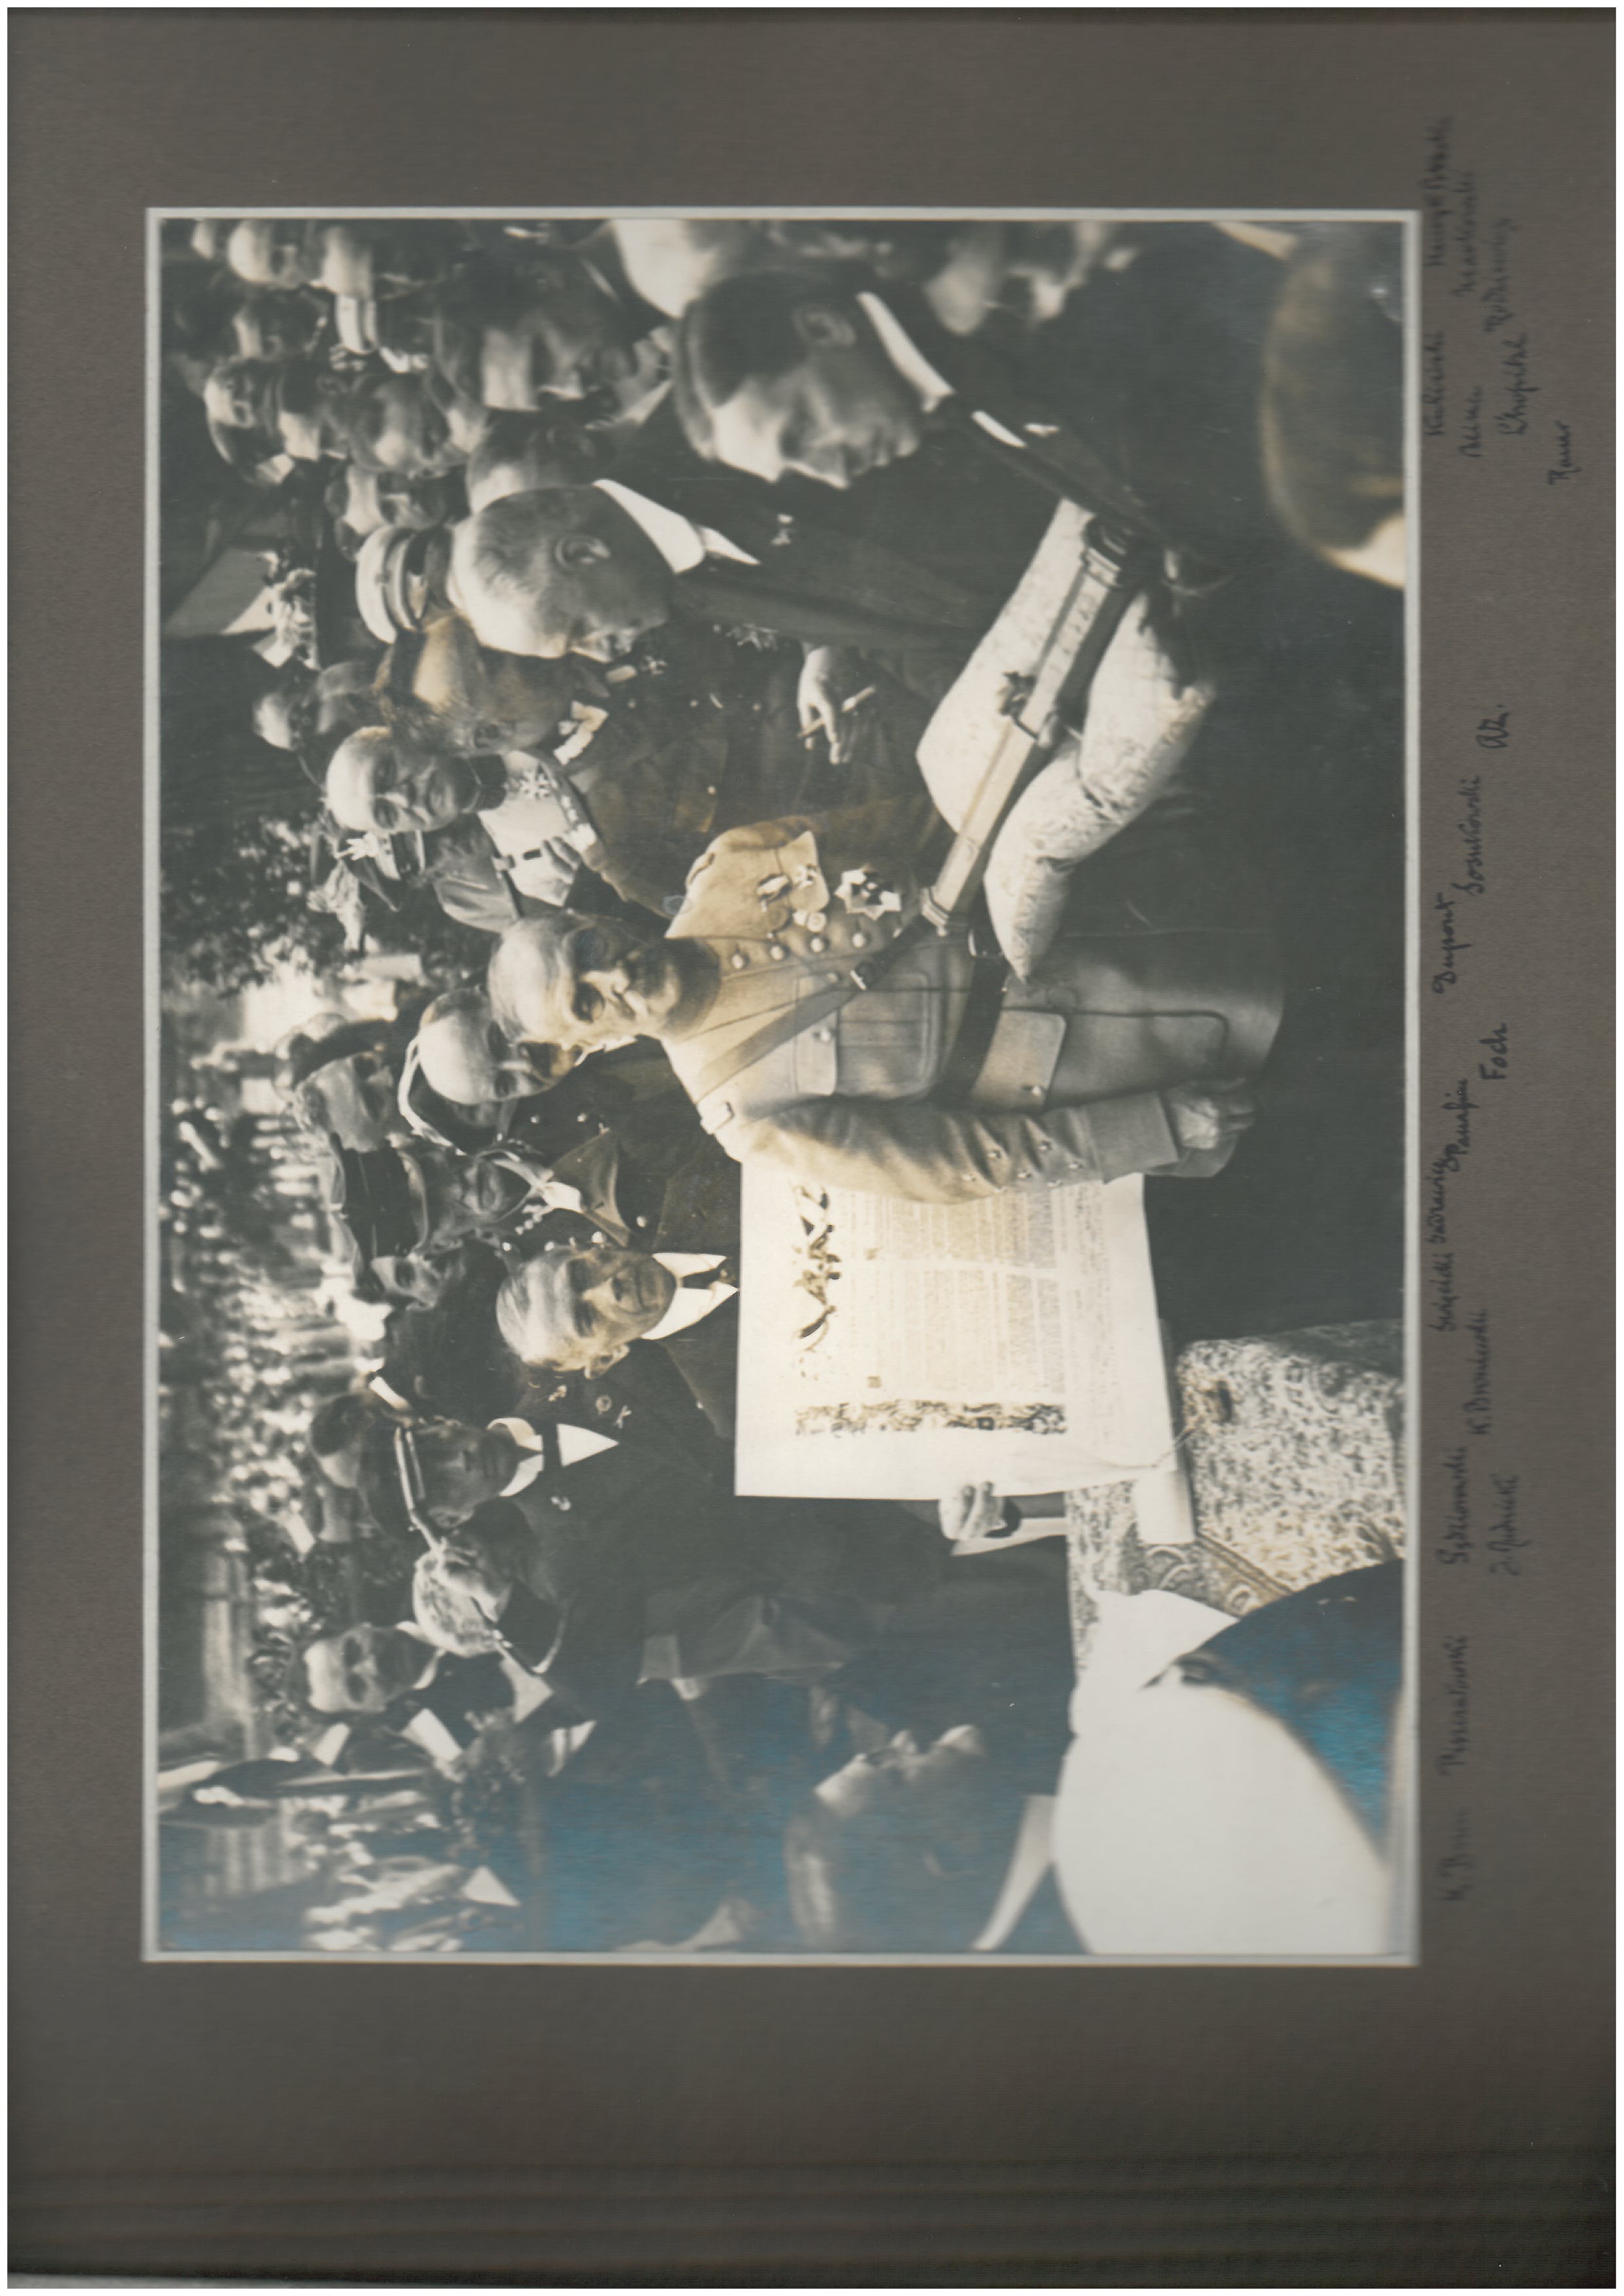 Zdjęcie jednej z kart w albumie pamiątkowym – na ciemnym tle naklejone zdjęcie archiwalne, czarno-białe, przedstawiające grupę mężczyzn w różnym wieku w . Pośrodku starszy mężczyzna w mundurze wojskowym z różnymi odznaczeniami na lewej piersi. Obok niego, nieco z przodu mężczyzna w garniturze trzymający na ozdobnej poduszce futerał; za nim mężczyzna trzymający ozdobny afisz z tekstem w języku polskim i francuskim.